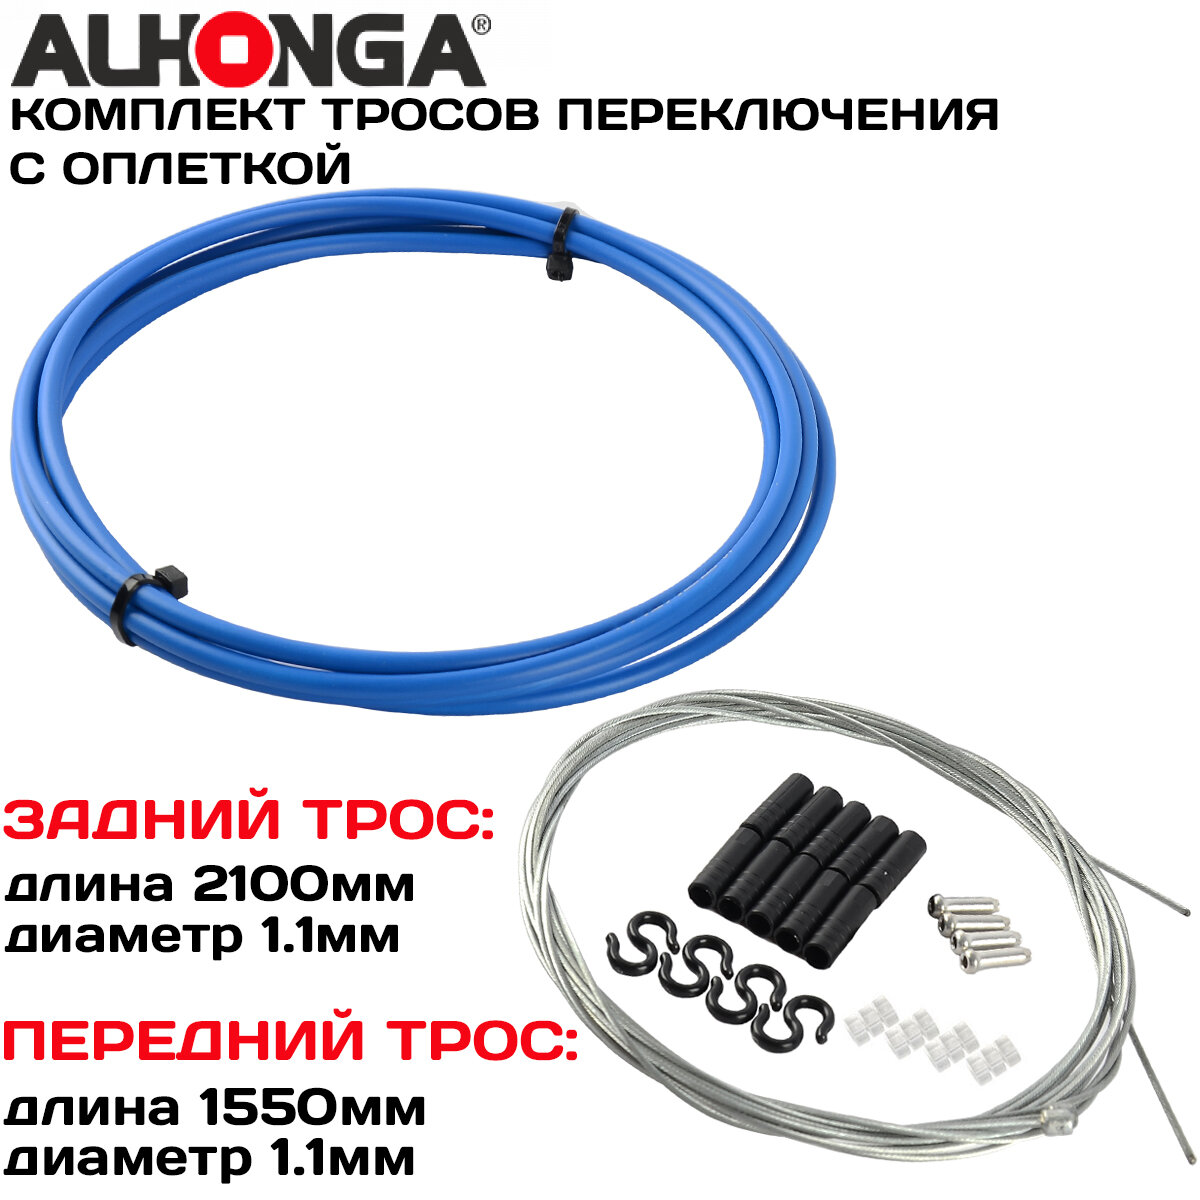 Комплект тросов переключения (2шт) Alhonga МТВ, с оплеткой, концевики оплетки и троса, синий